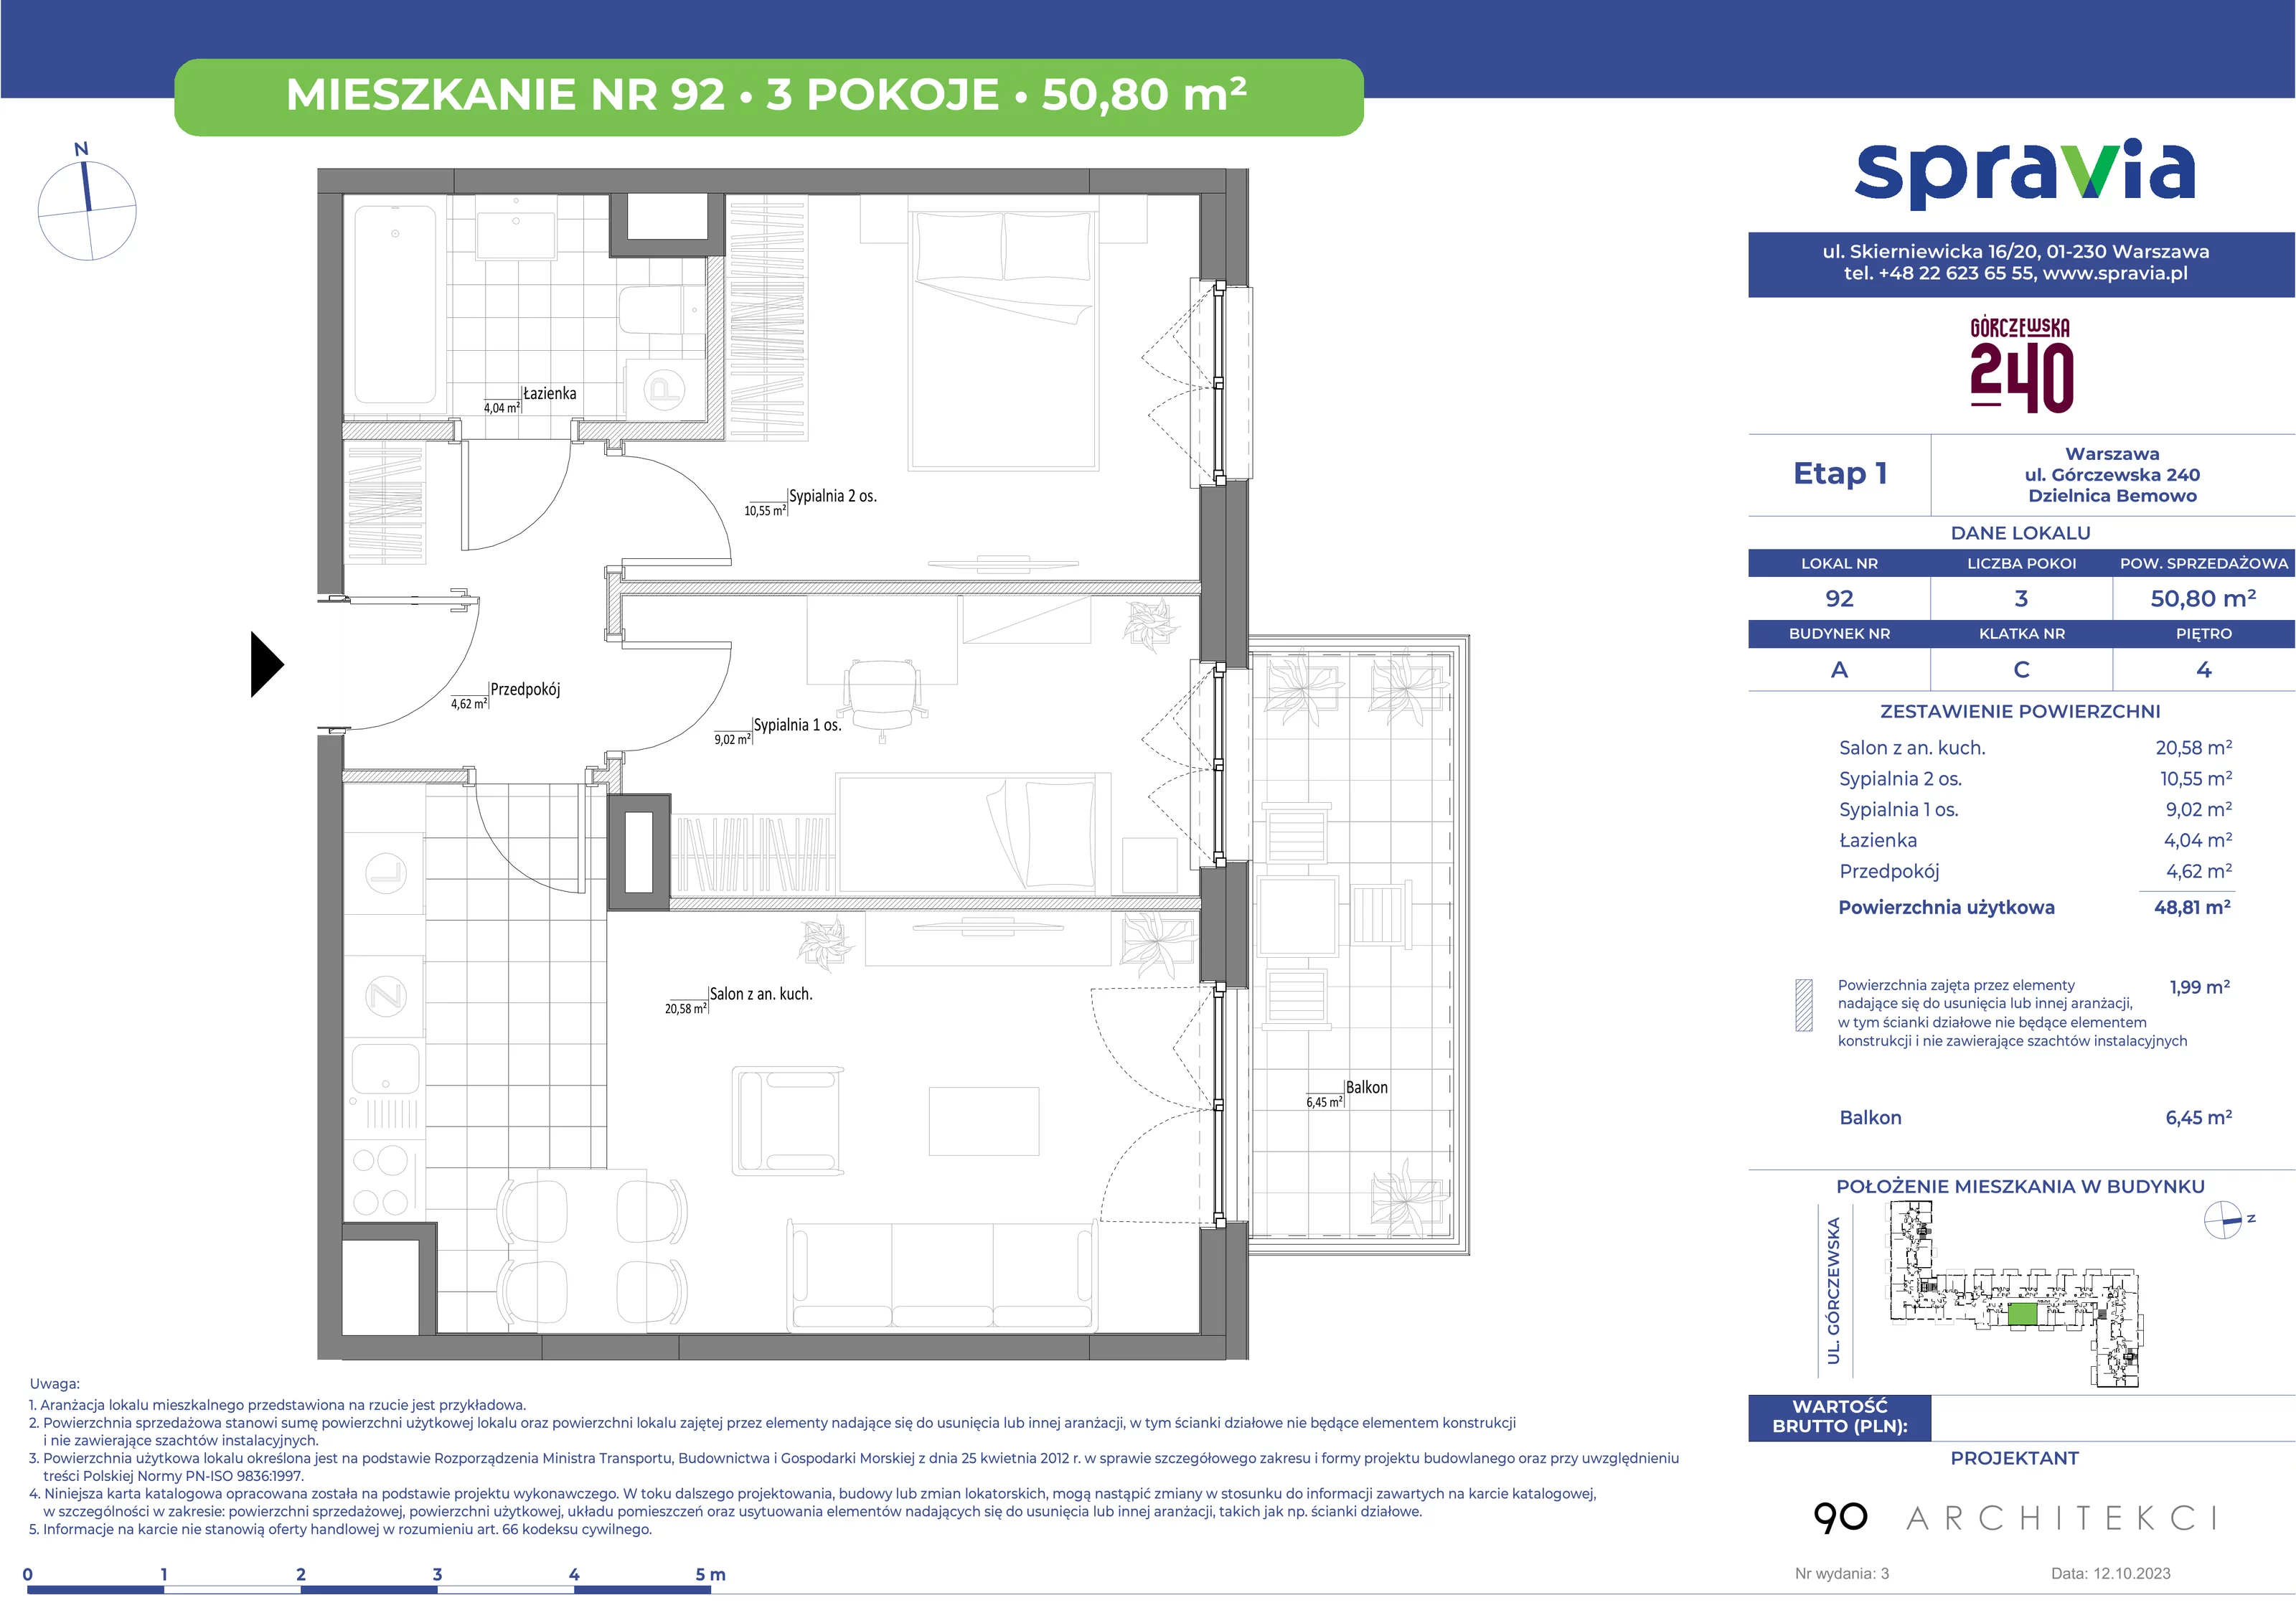 Mieszkanie 50,80 m², piętro 4, oferta nr 92, Górczewska 240, Warszawa, Bemowo, Górce, ul. Górczewska 240